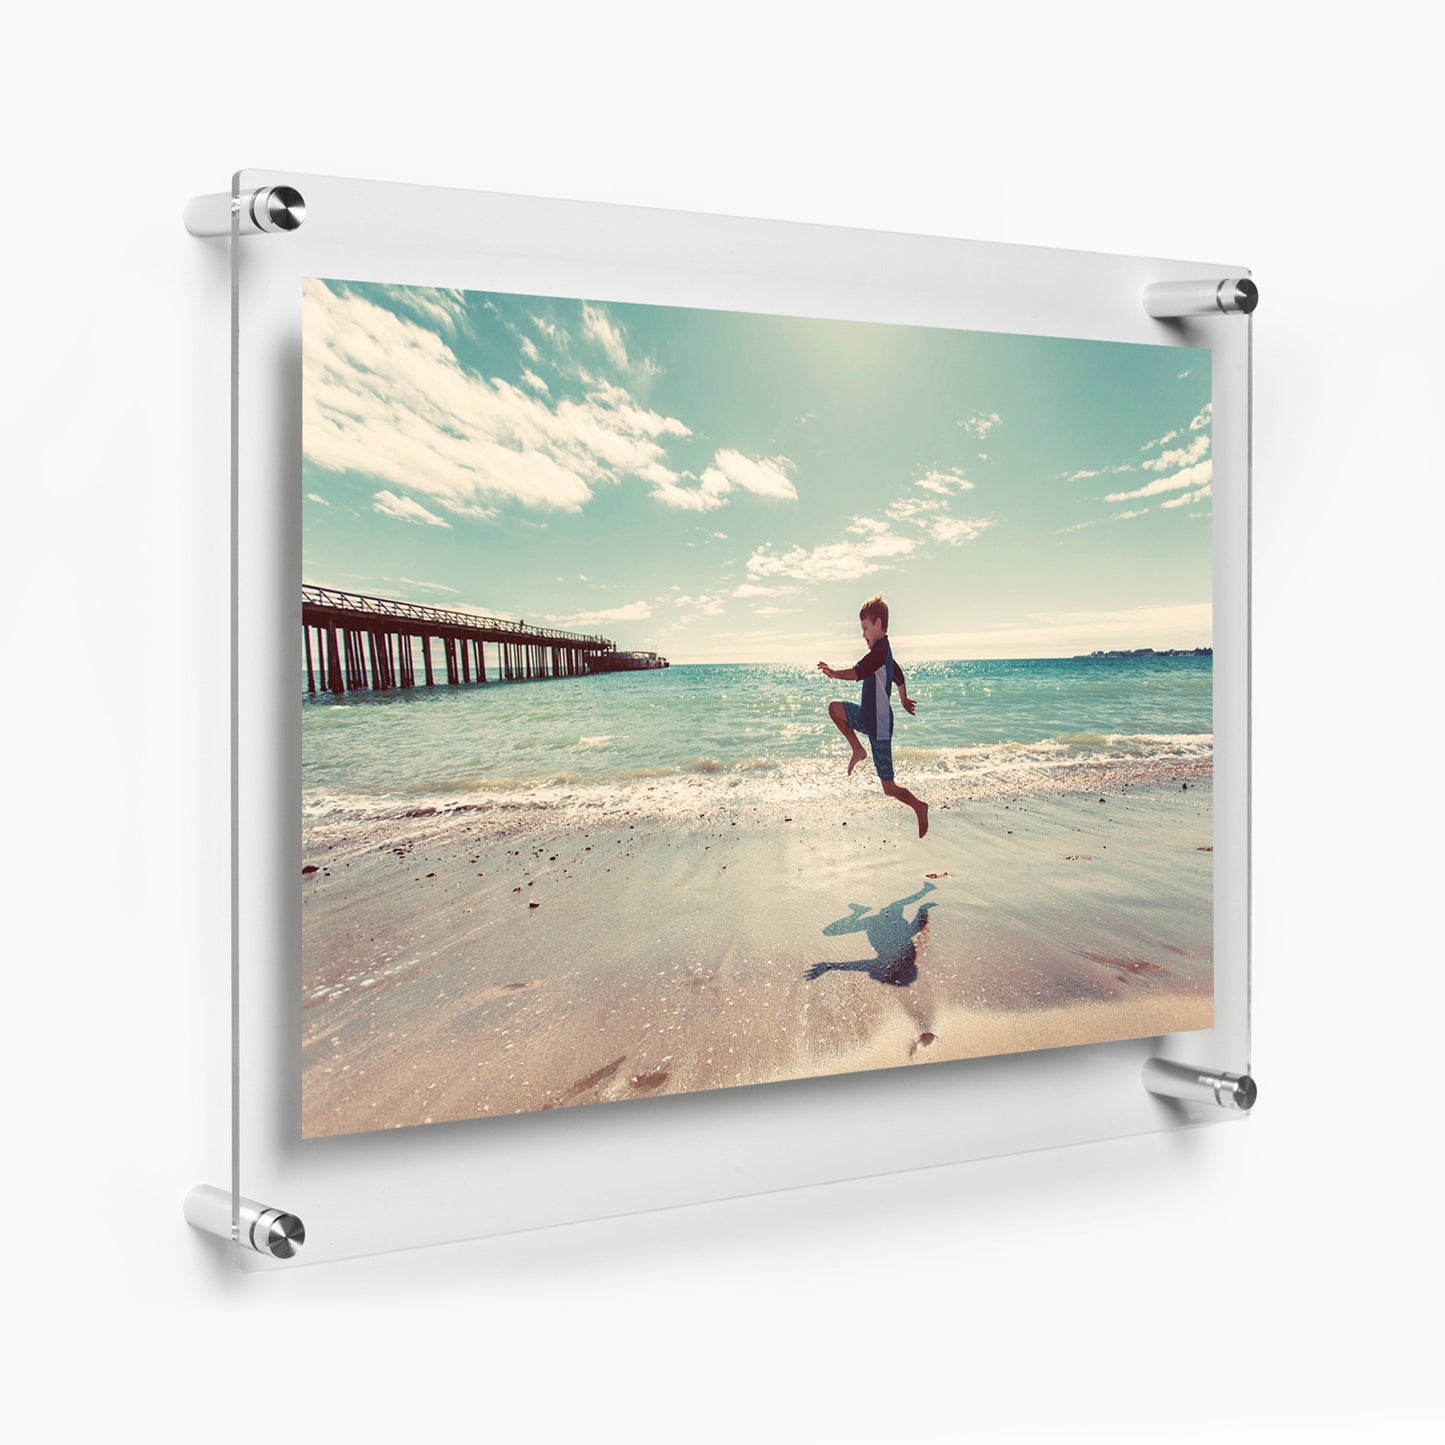 Double Panel Frames Case Packs